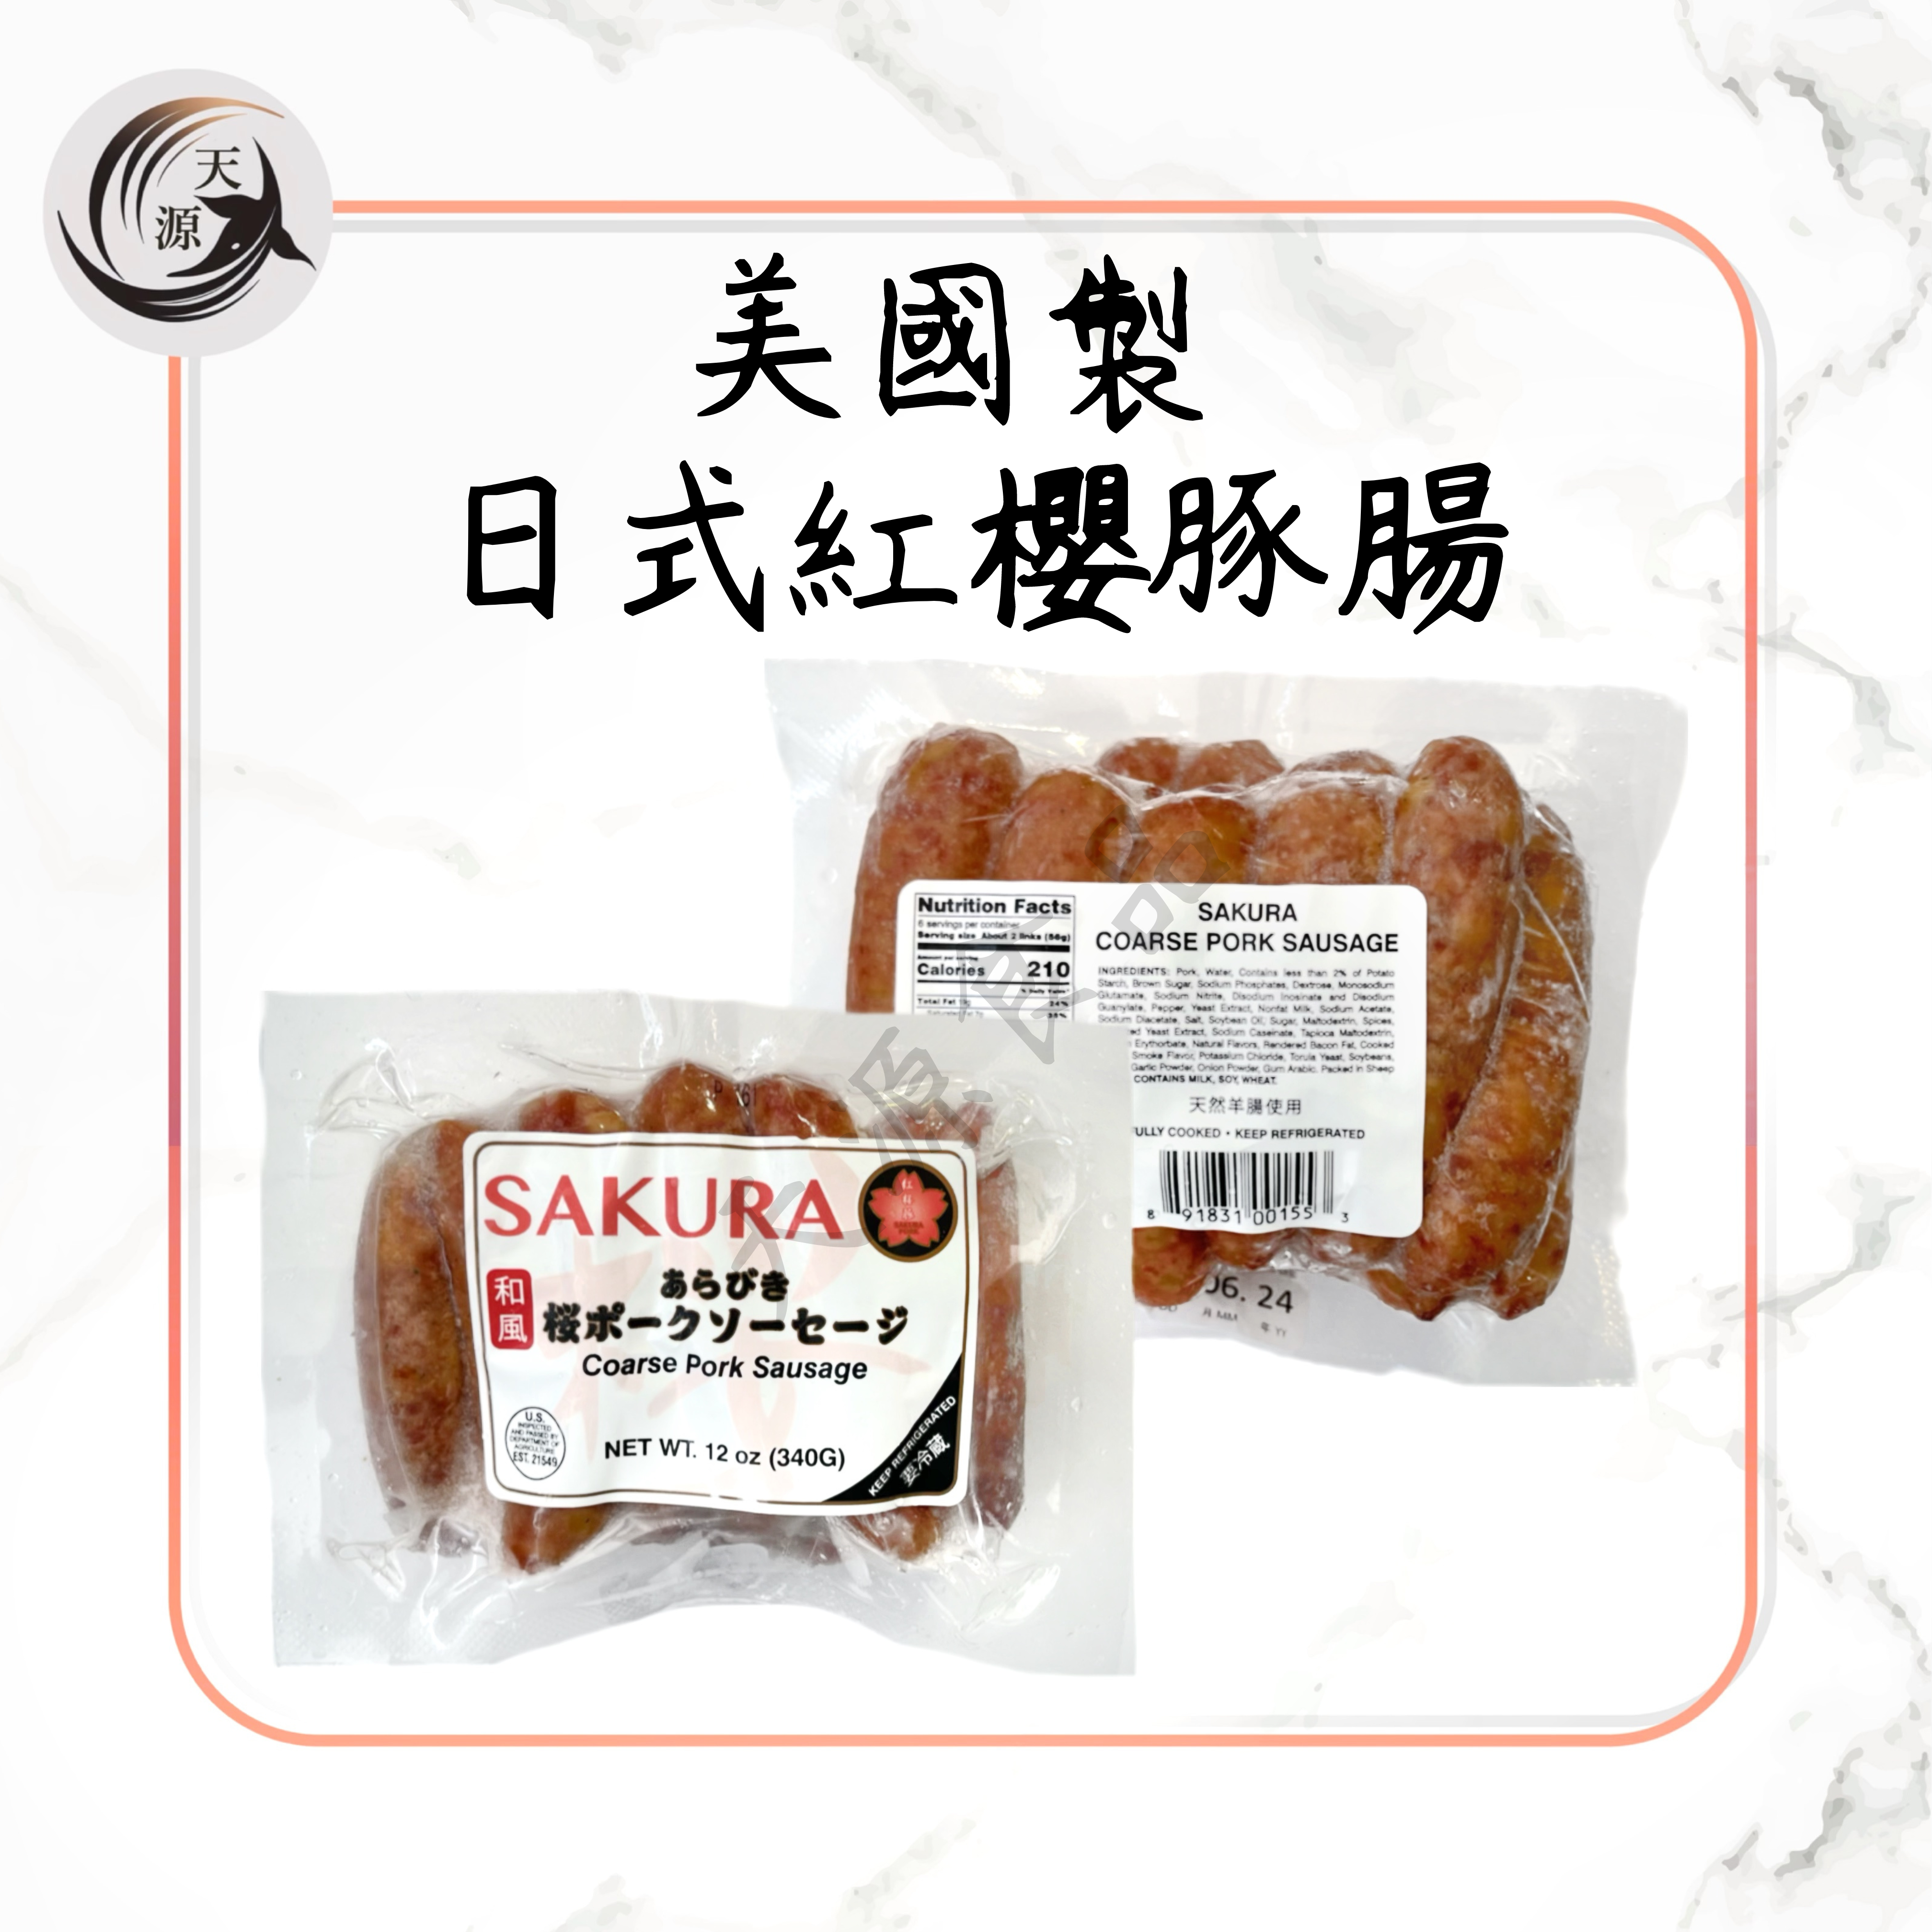 美國日式紅櫻豚腸 340g